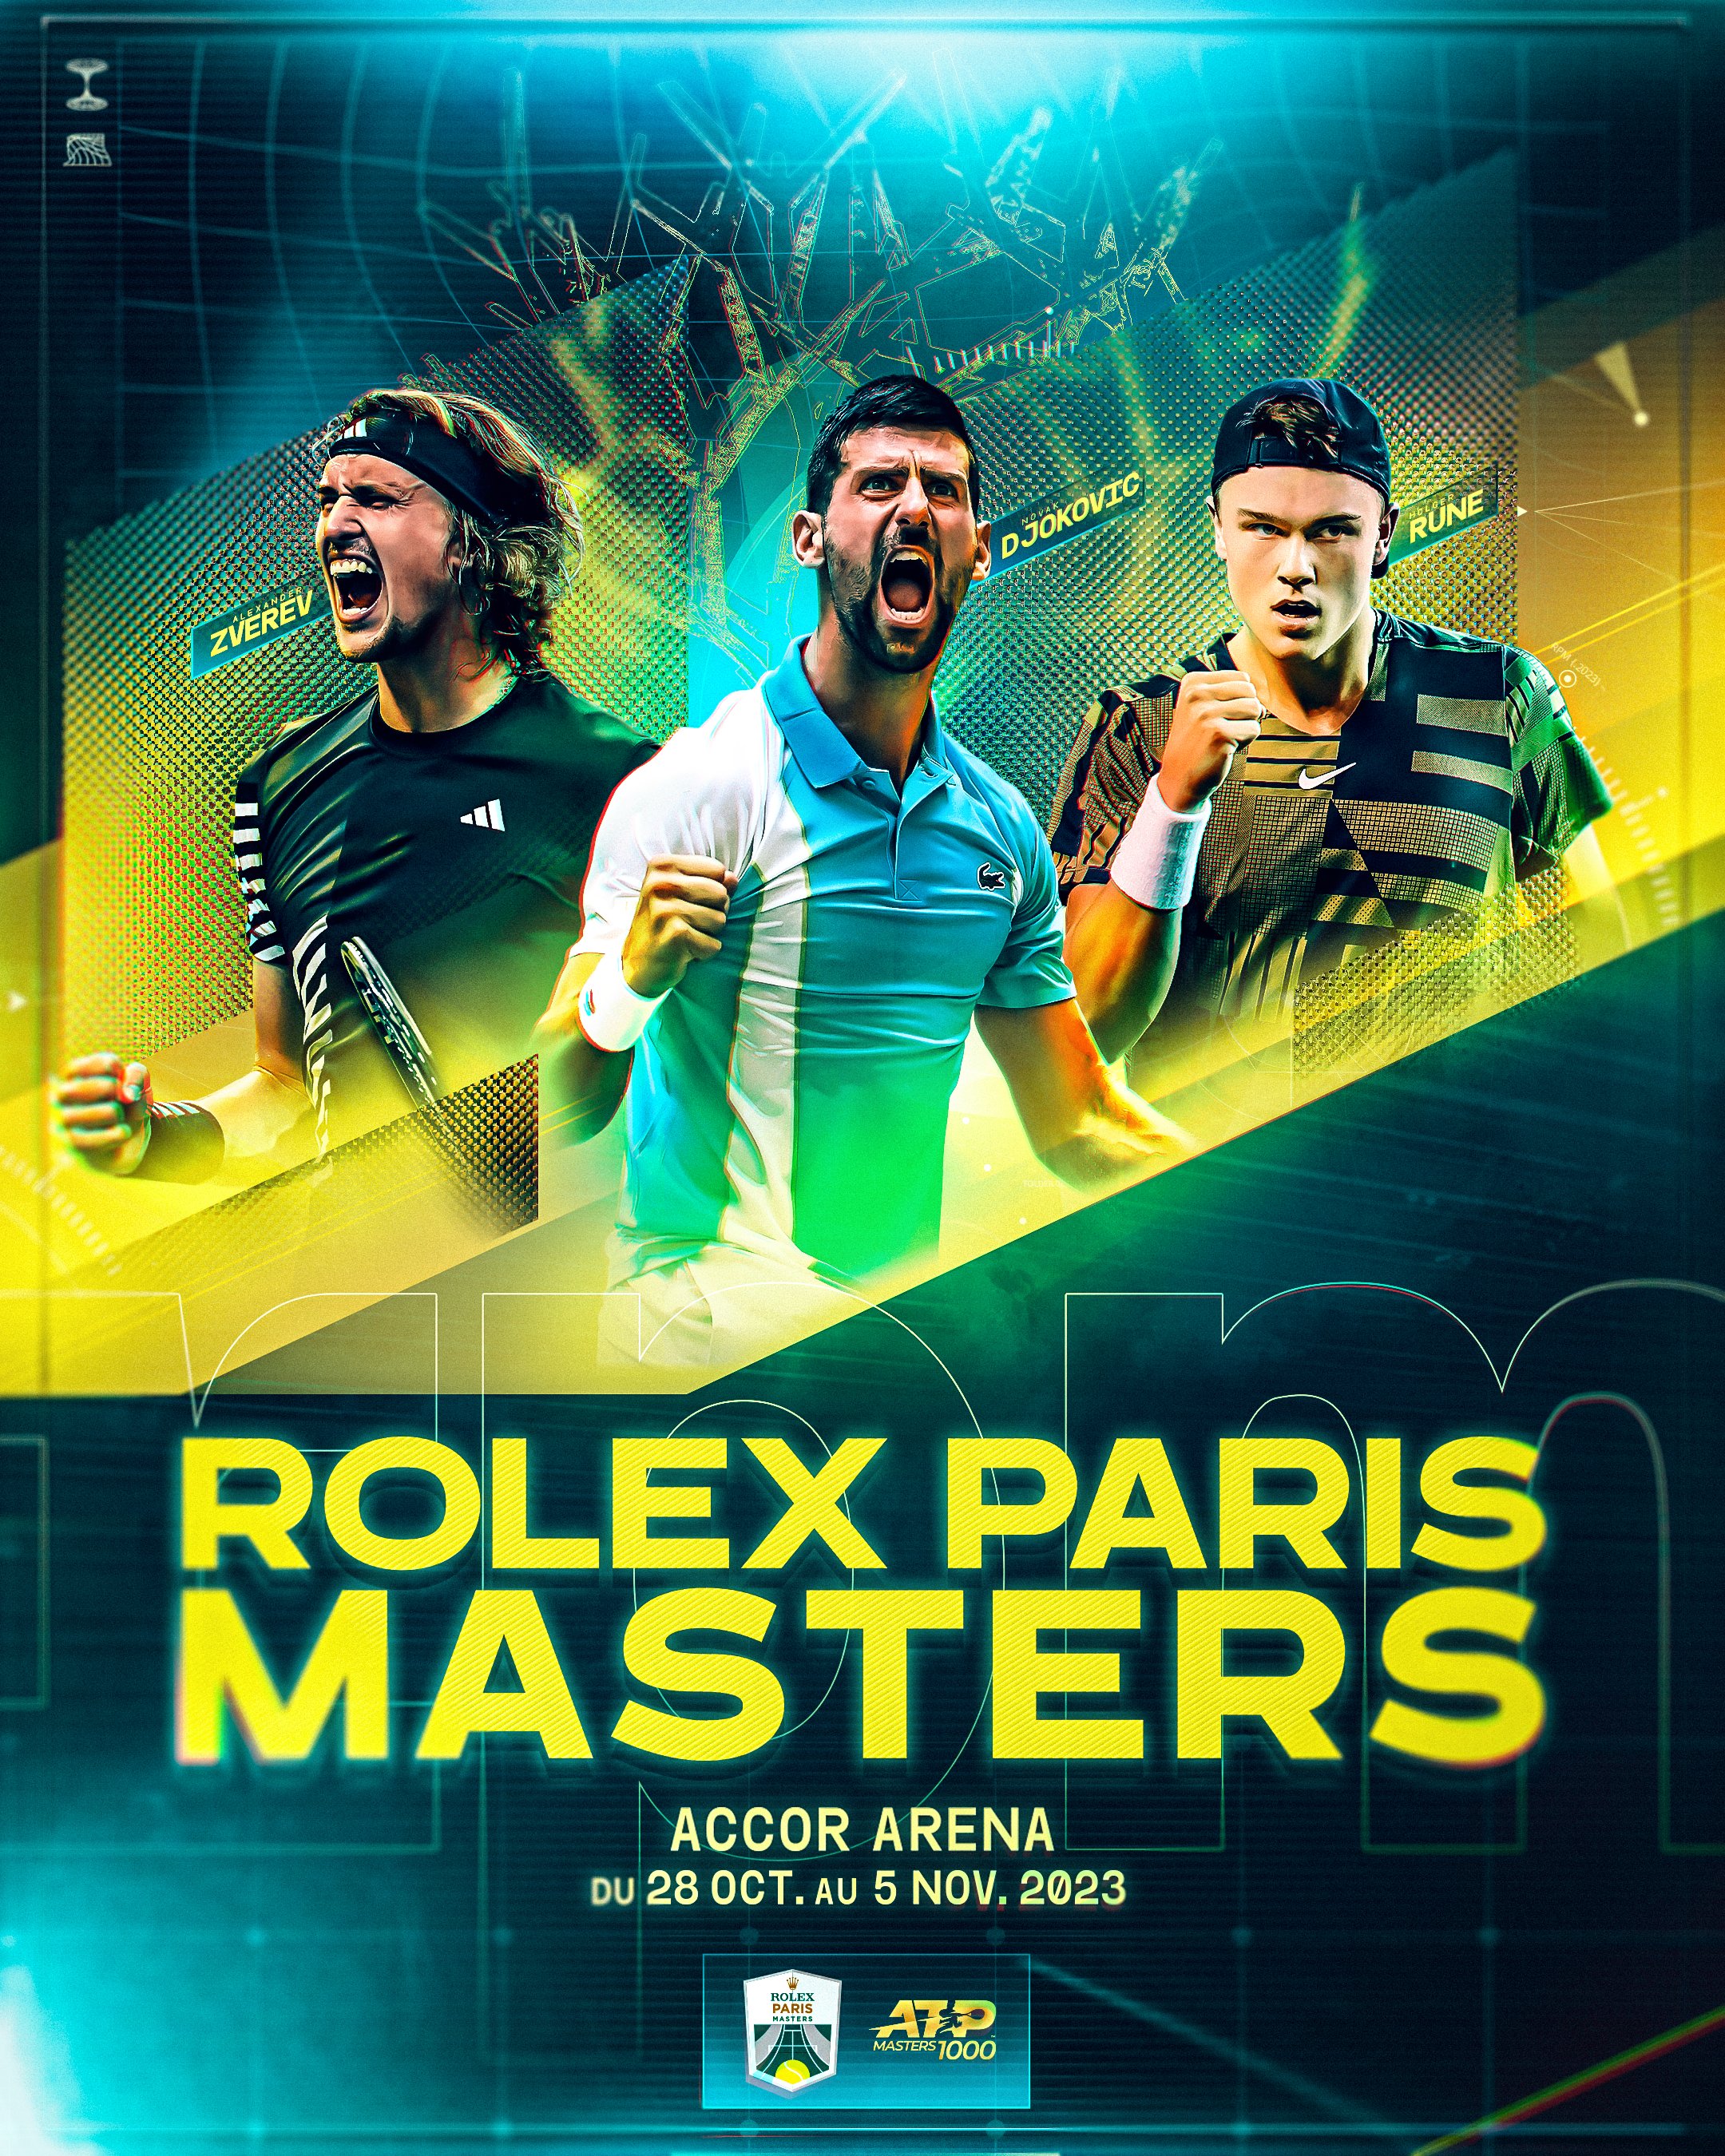 ROLEX PARIS MASTERS on X: "Le tennis entre en scène !🤩 Venez vivre une  expérience unique au cœur de Paris. Réservez vos places pour assister aux  matchs du Rolex Paris Masters dans